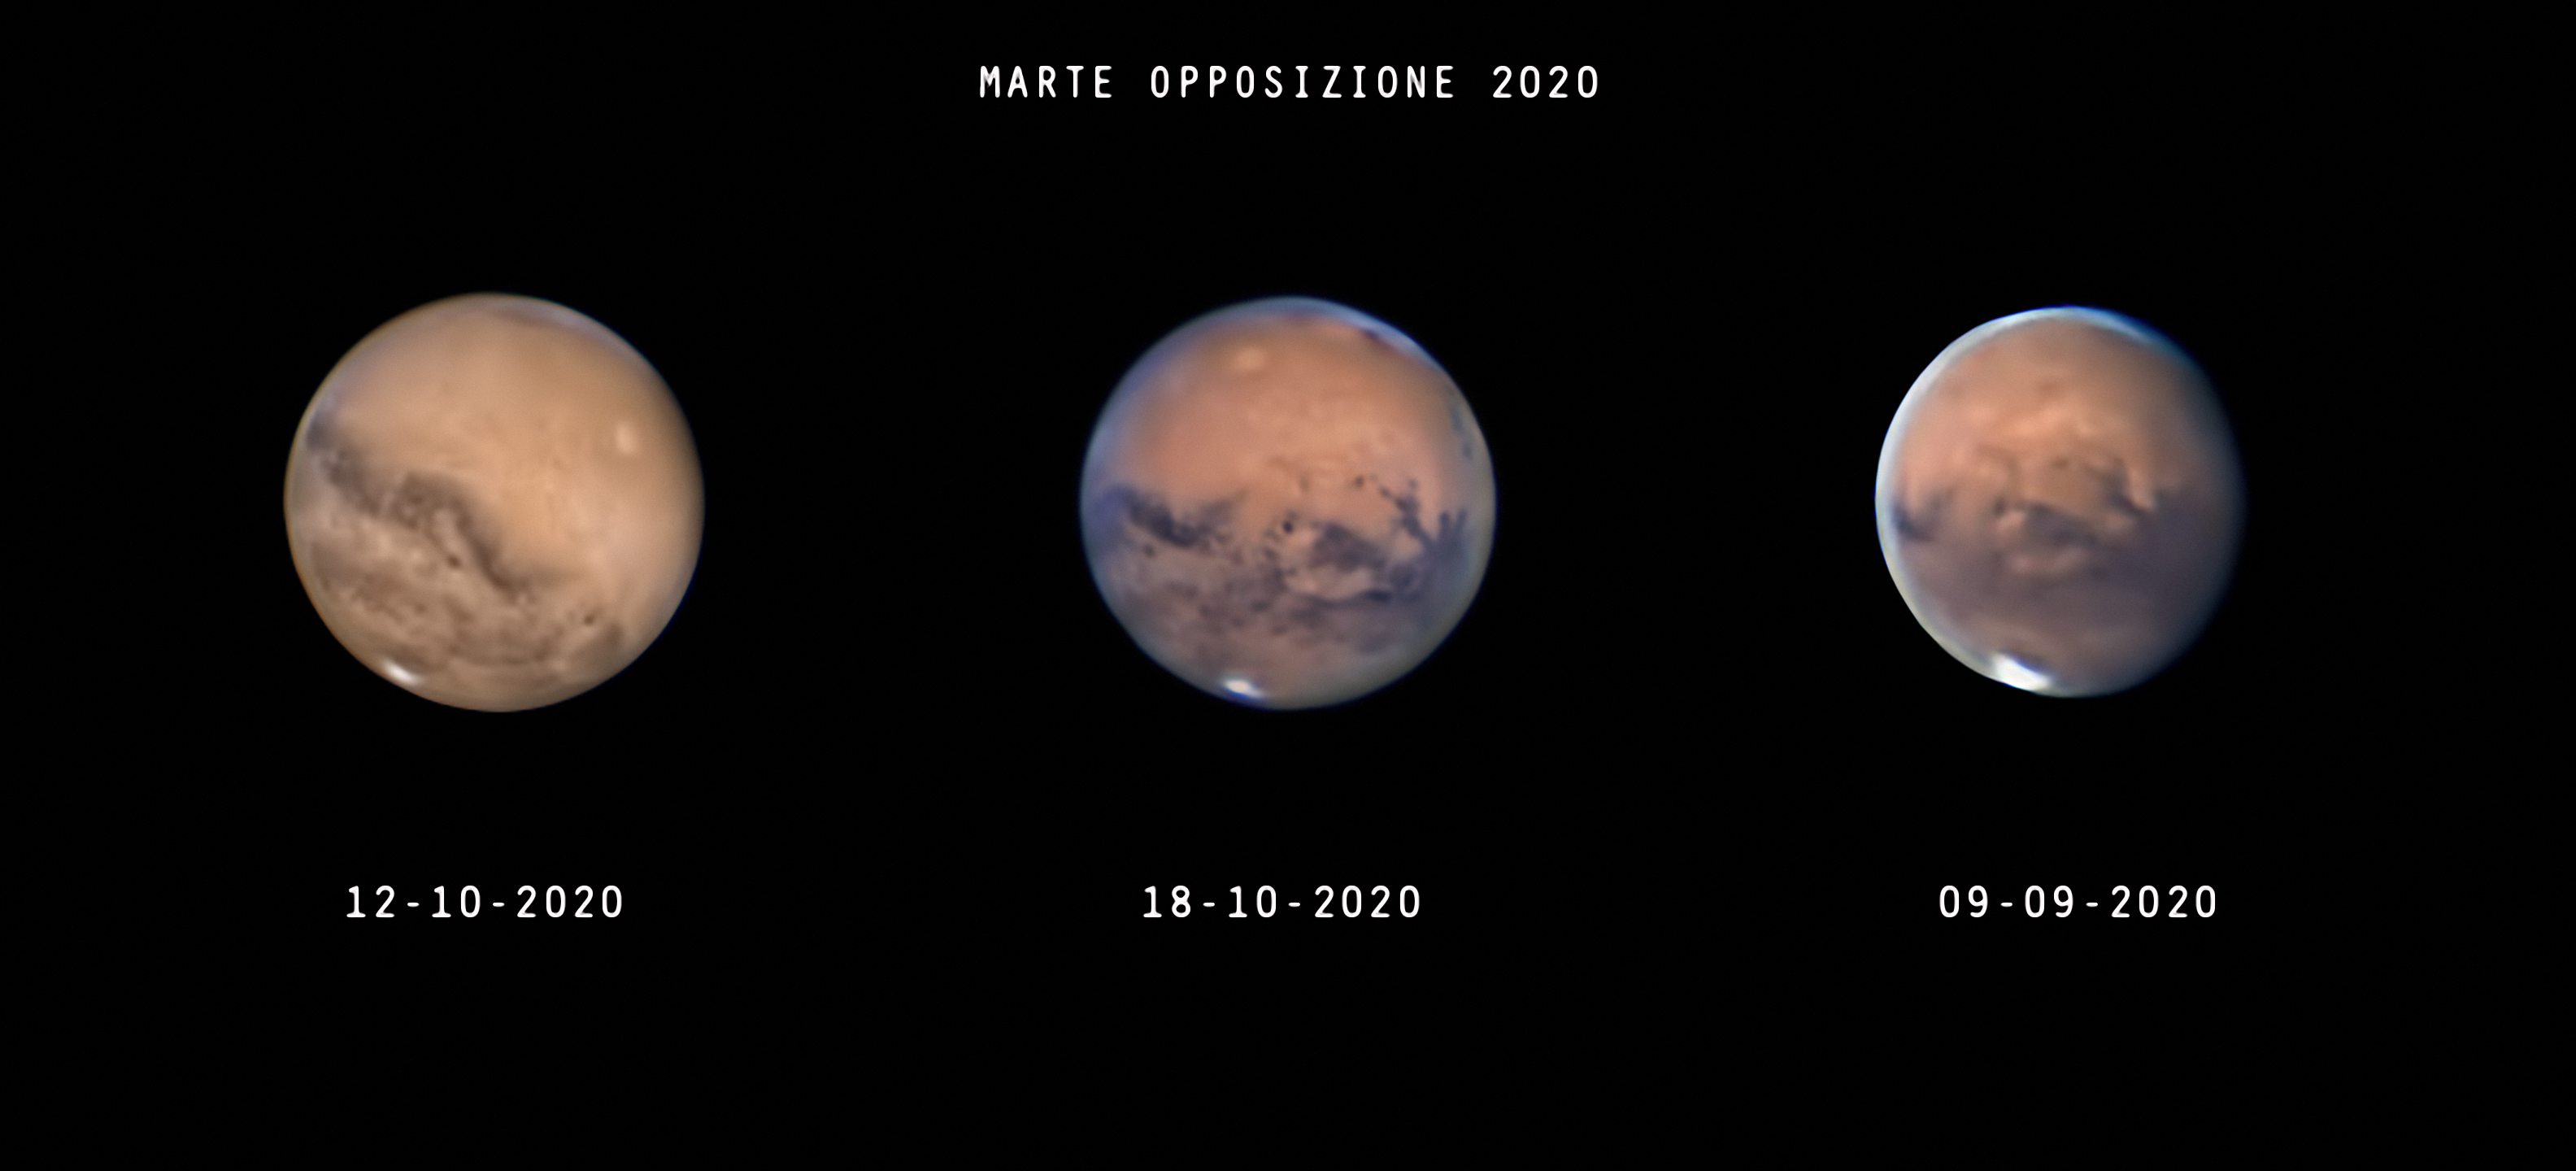 Marte opposizione 2020